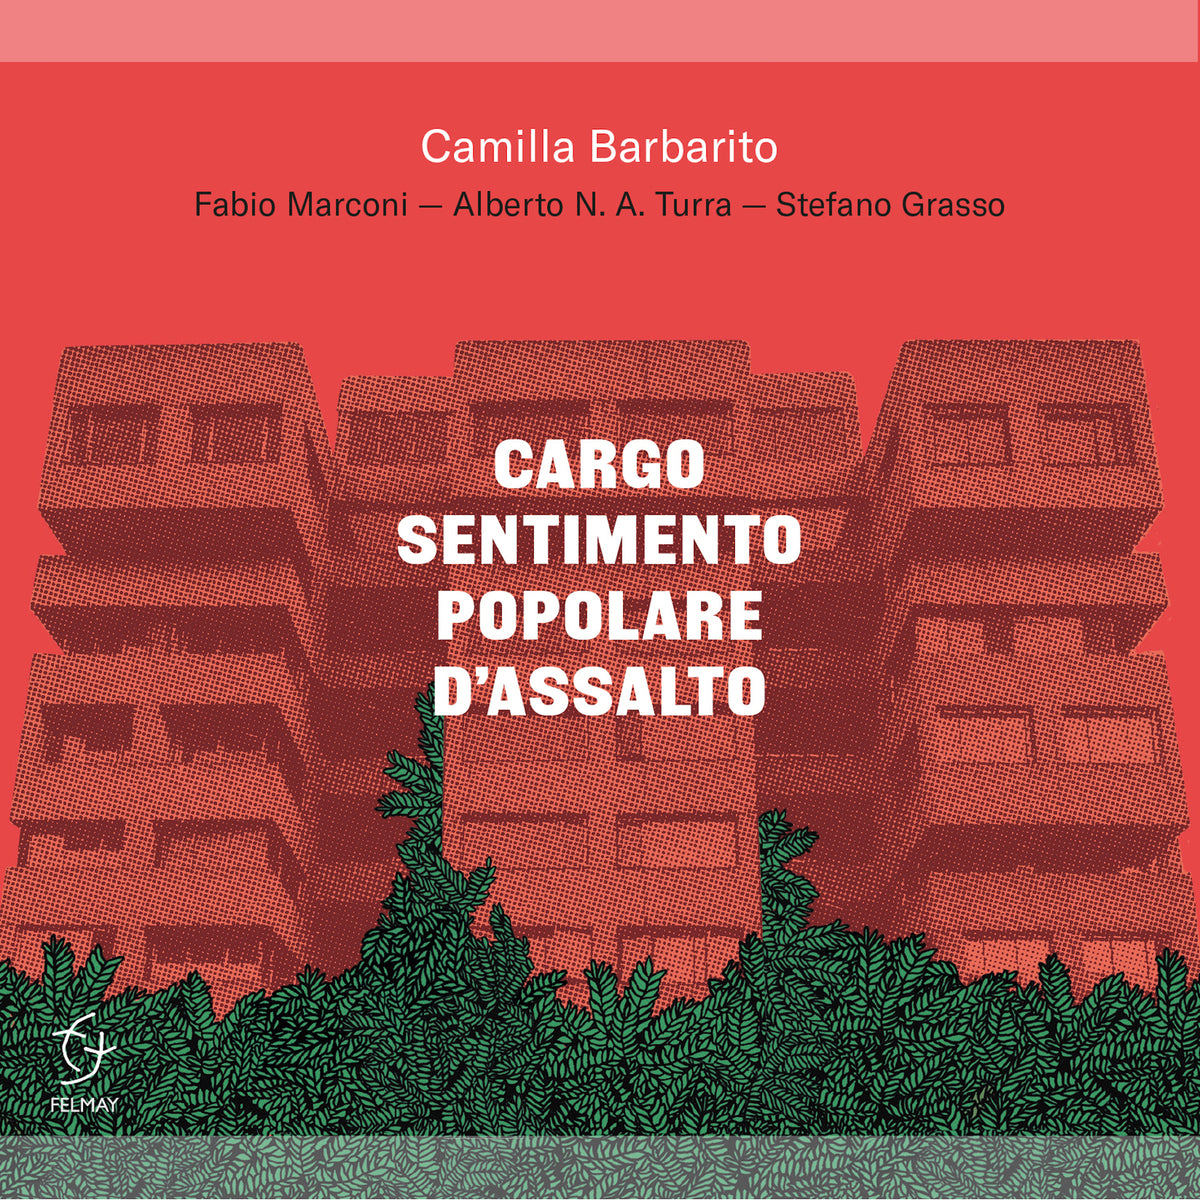 Camilla Barbarito - Cargo Sentimento Popolare D'assalto - FY8291